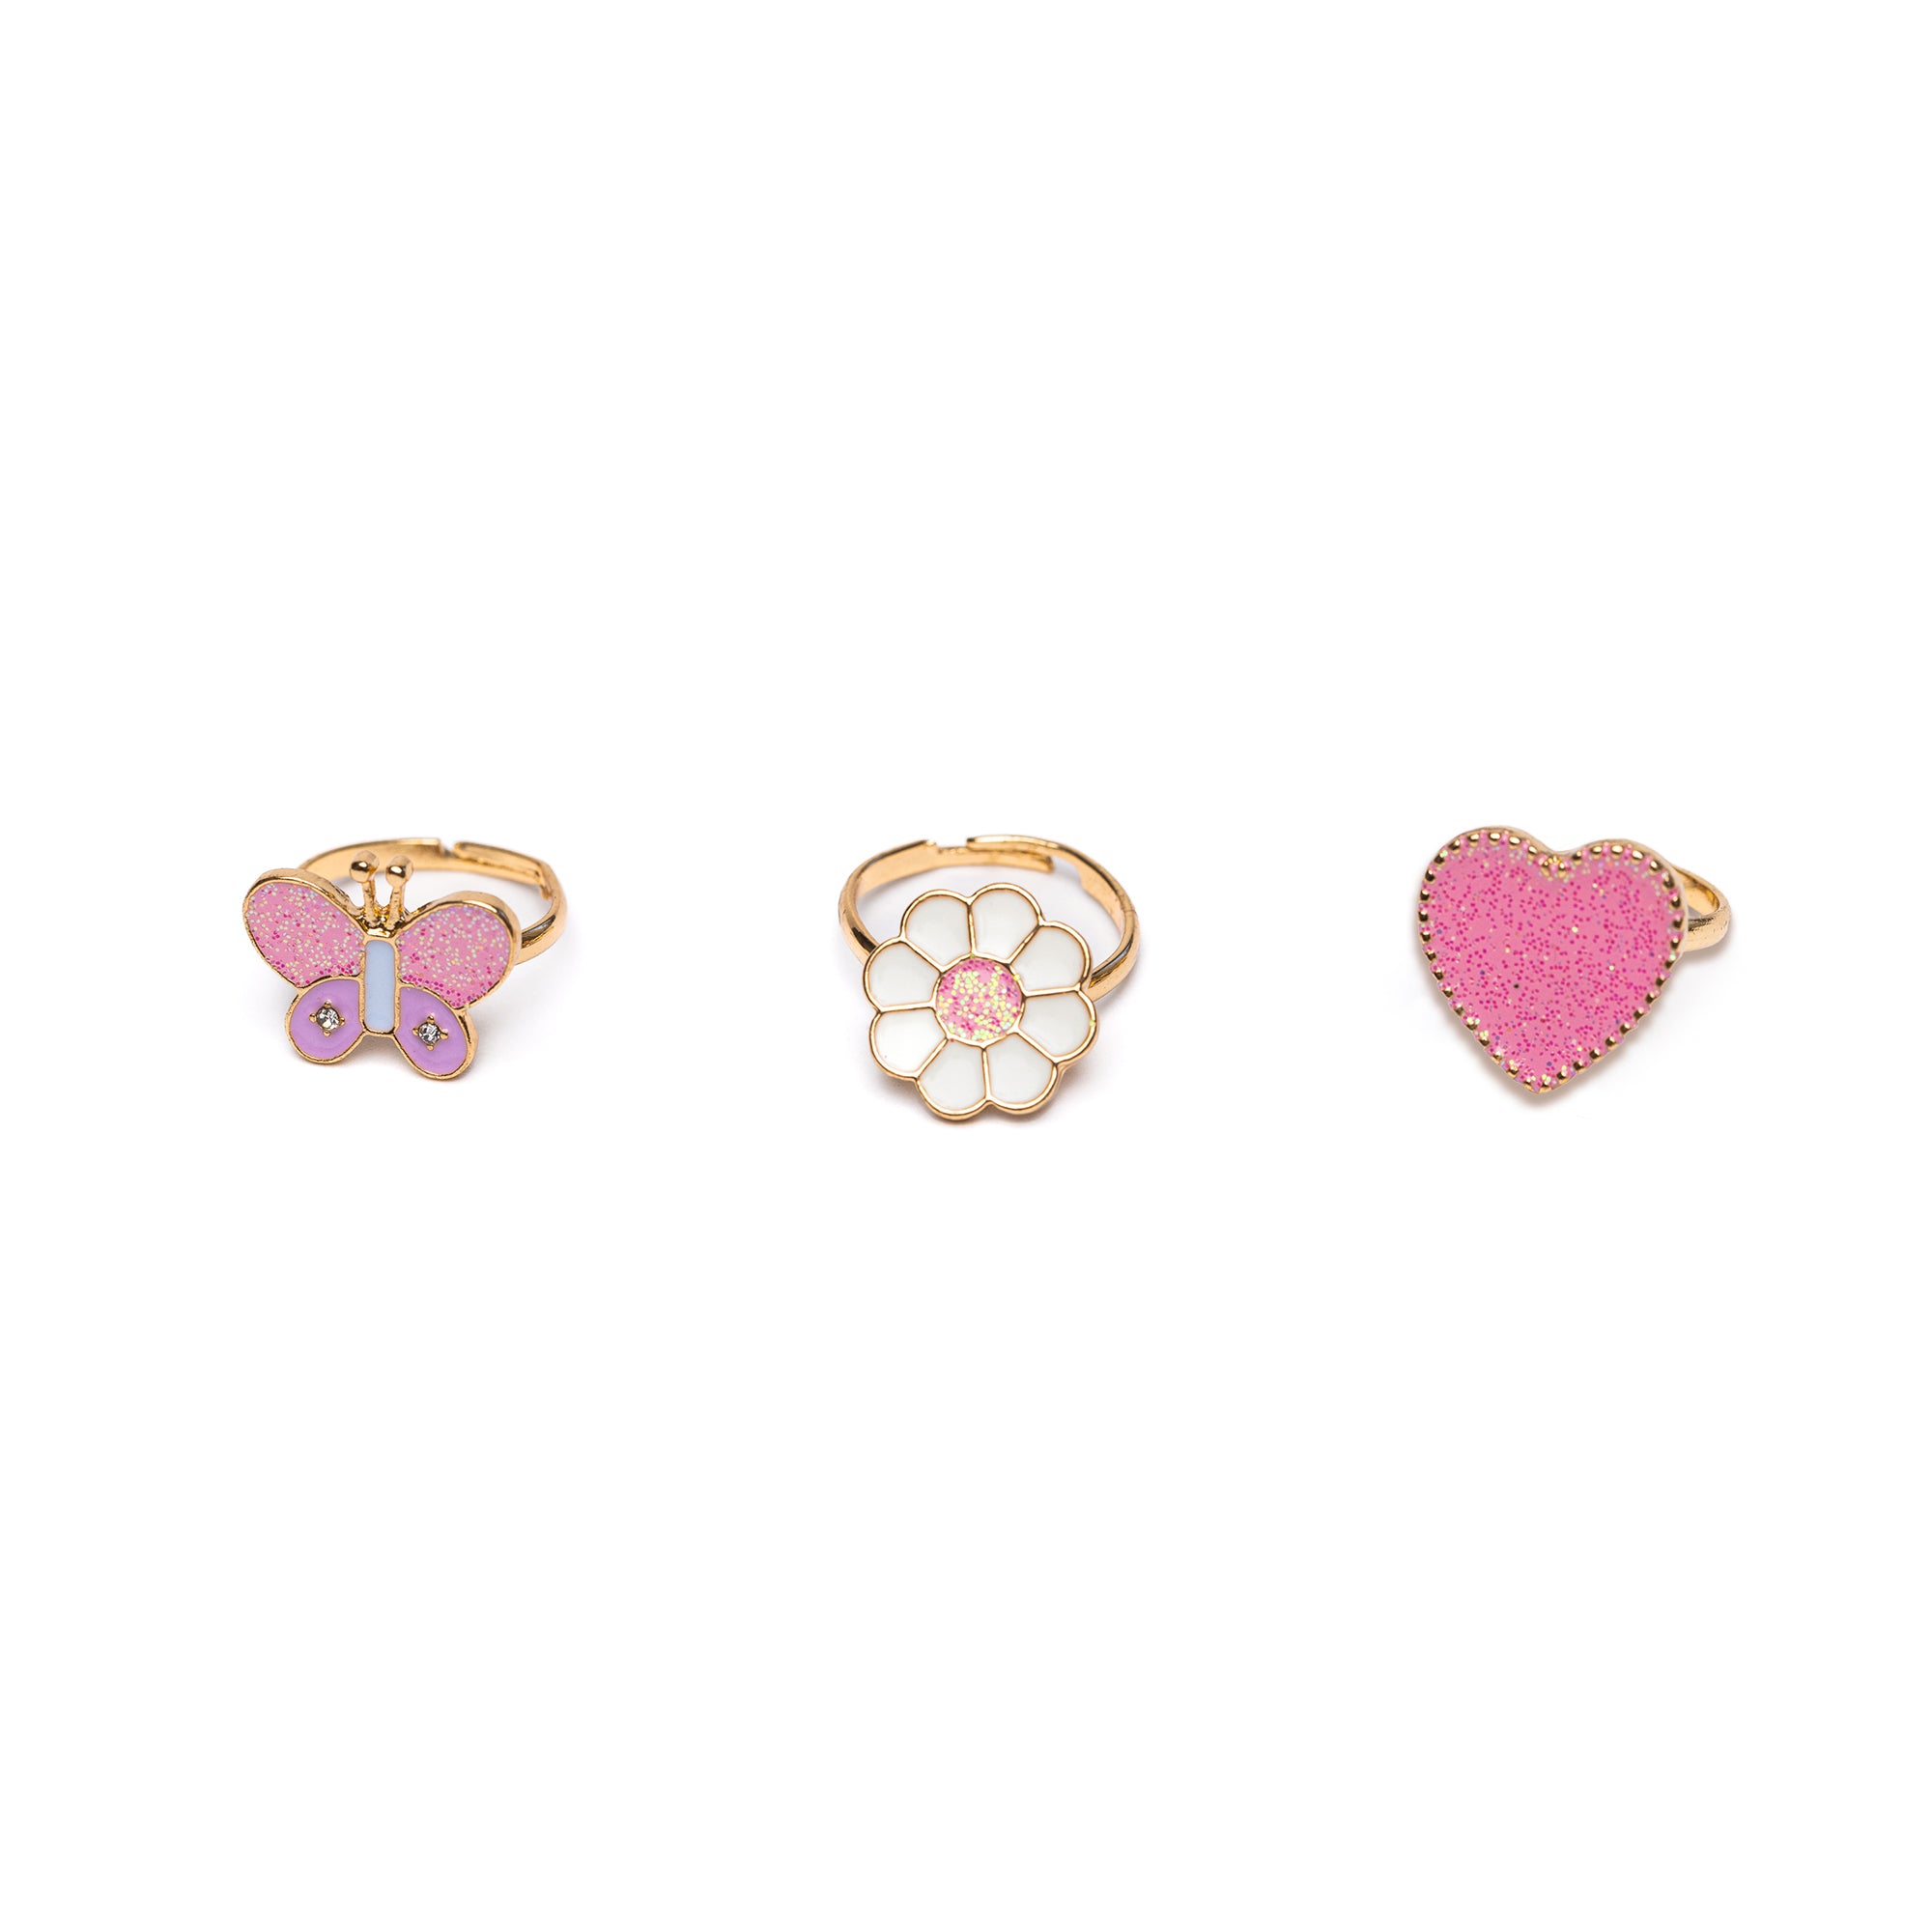 Kid's Jewelry 3pcs Wonderland Ring Set Flower, Butterfly, Heart